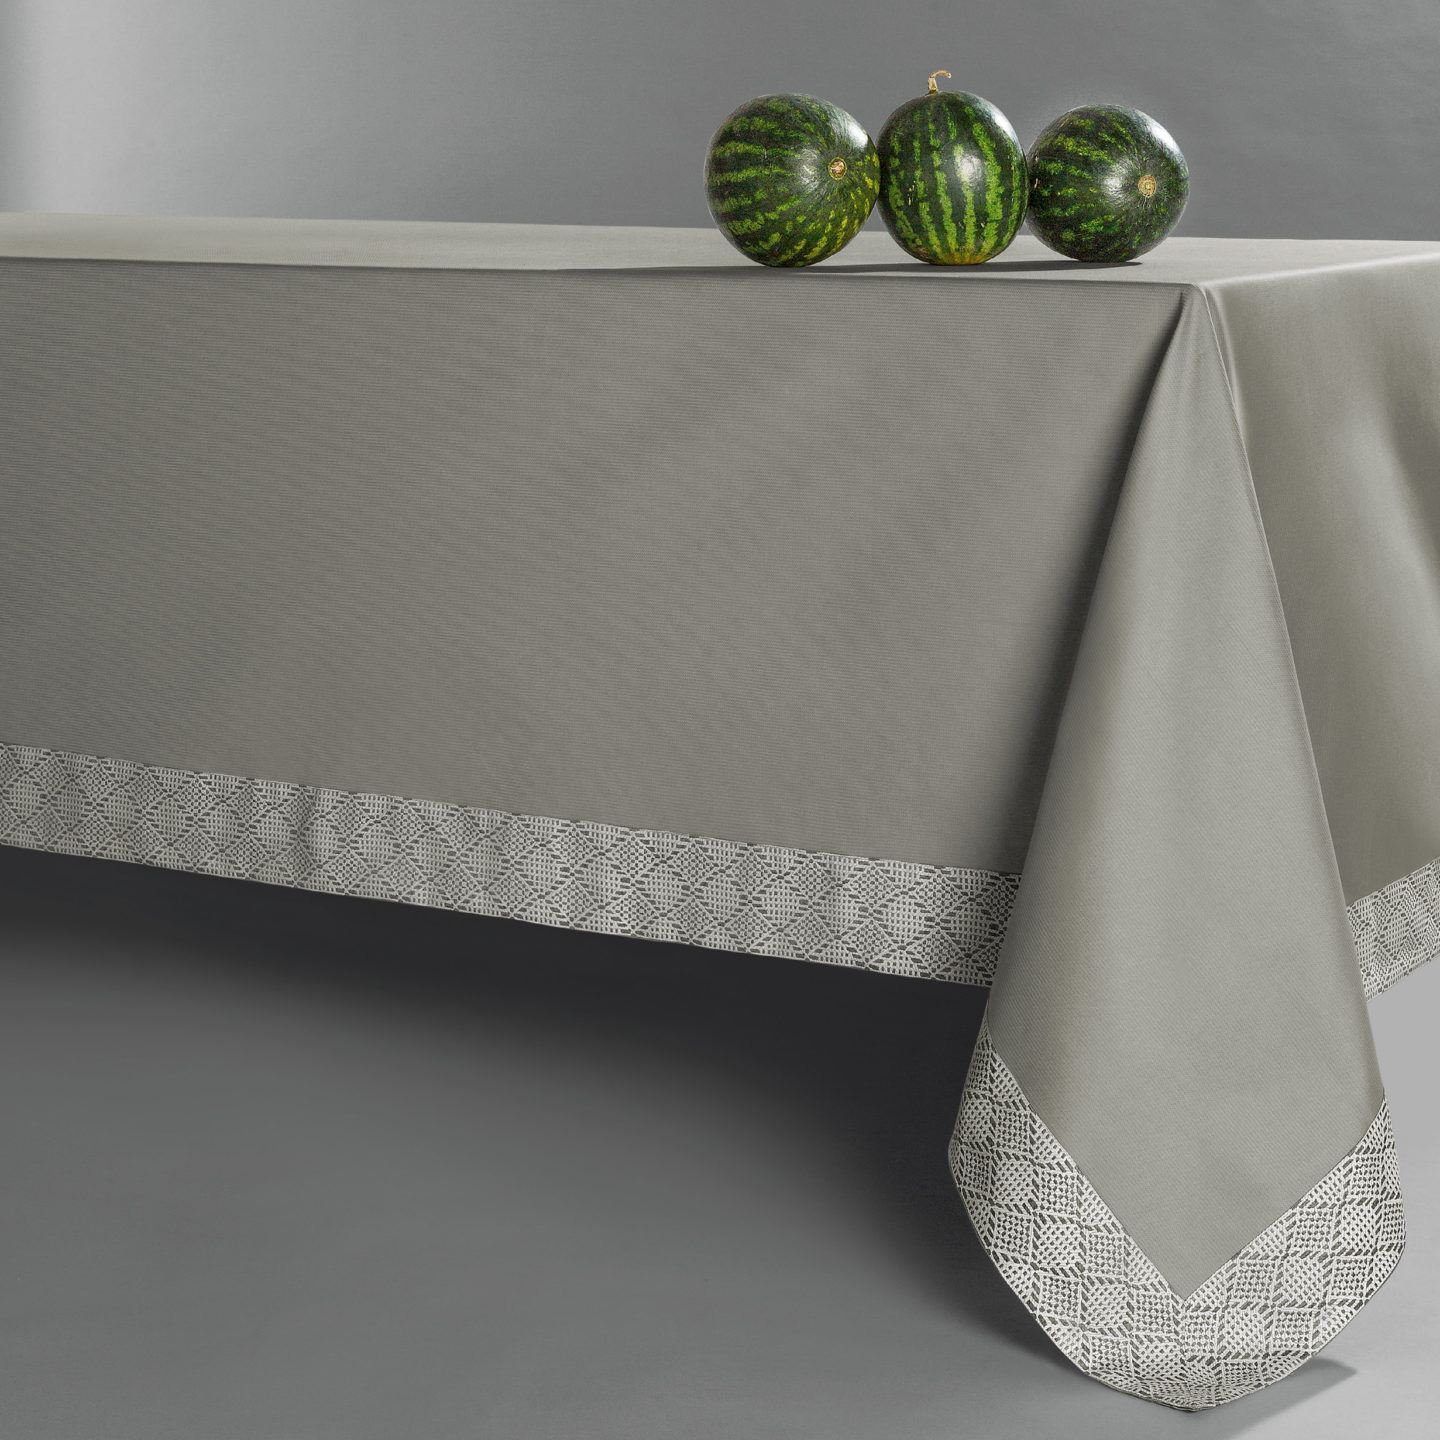 Quagliotti tablecloth grey watermelon styling